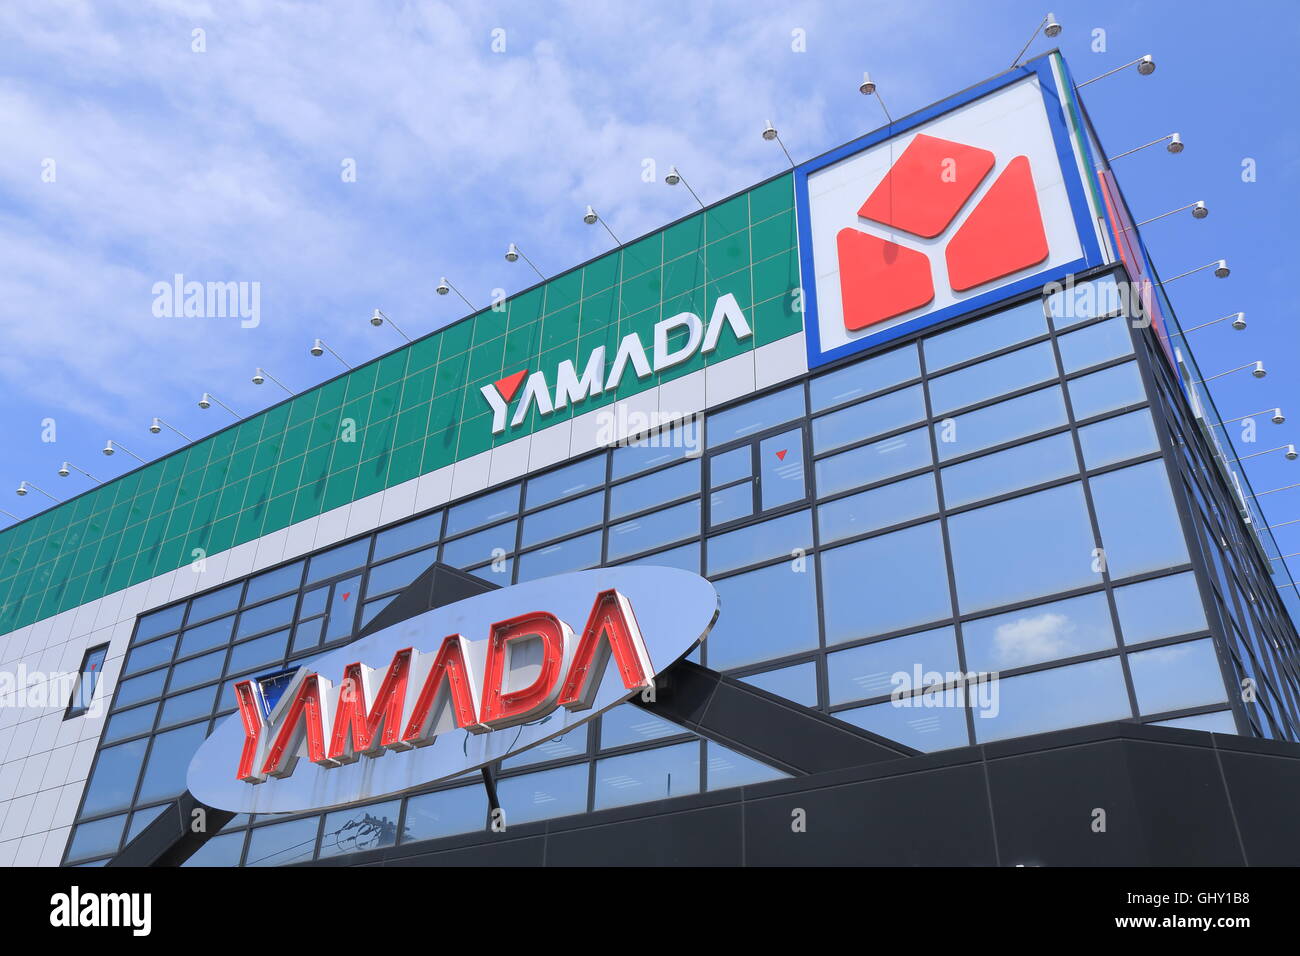 YAMADA Denk Gebäude, eines der größten Elektronik-Händler Verbraucherkette in Japan im Jahre 1972 gegründet Stockfoto